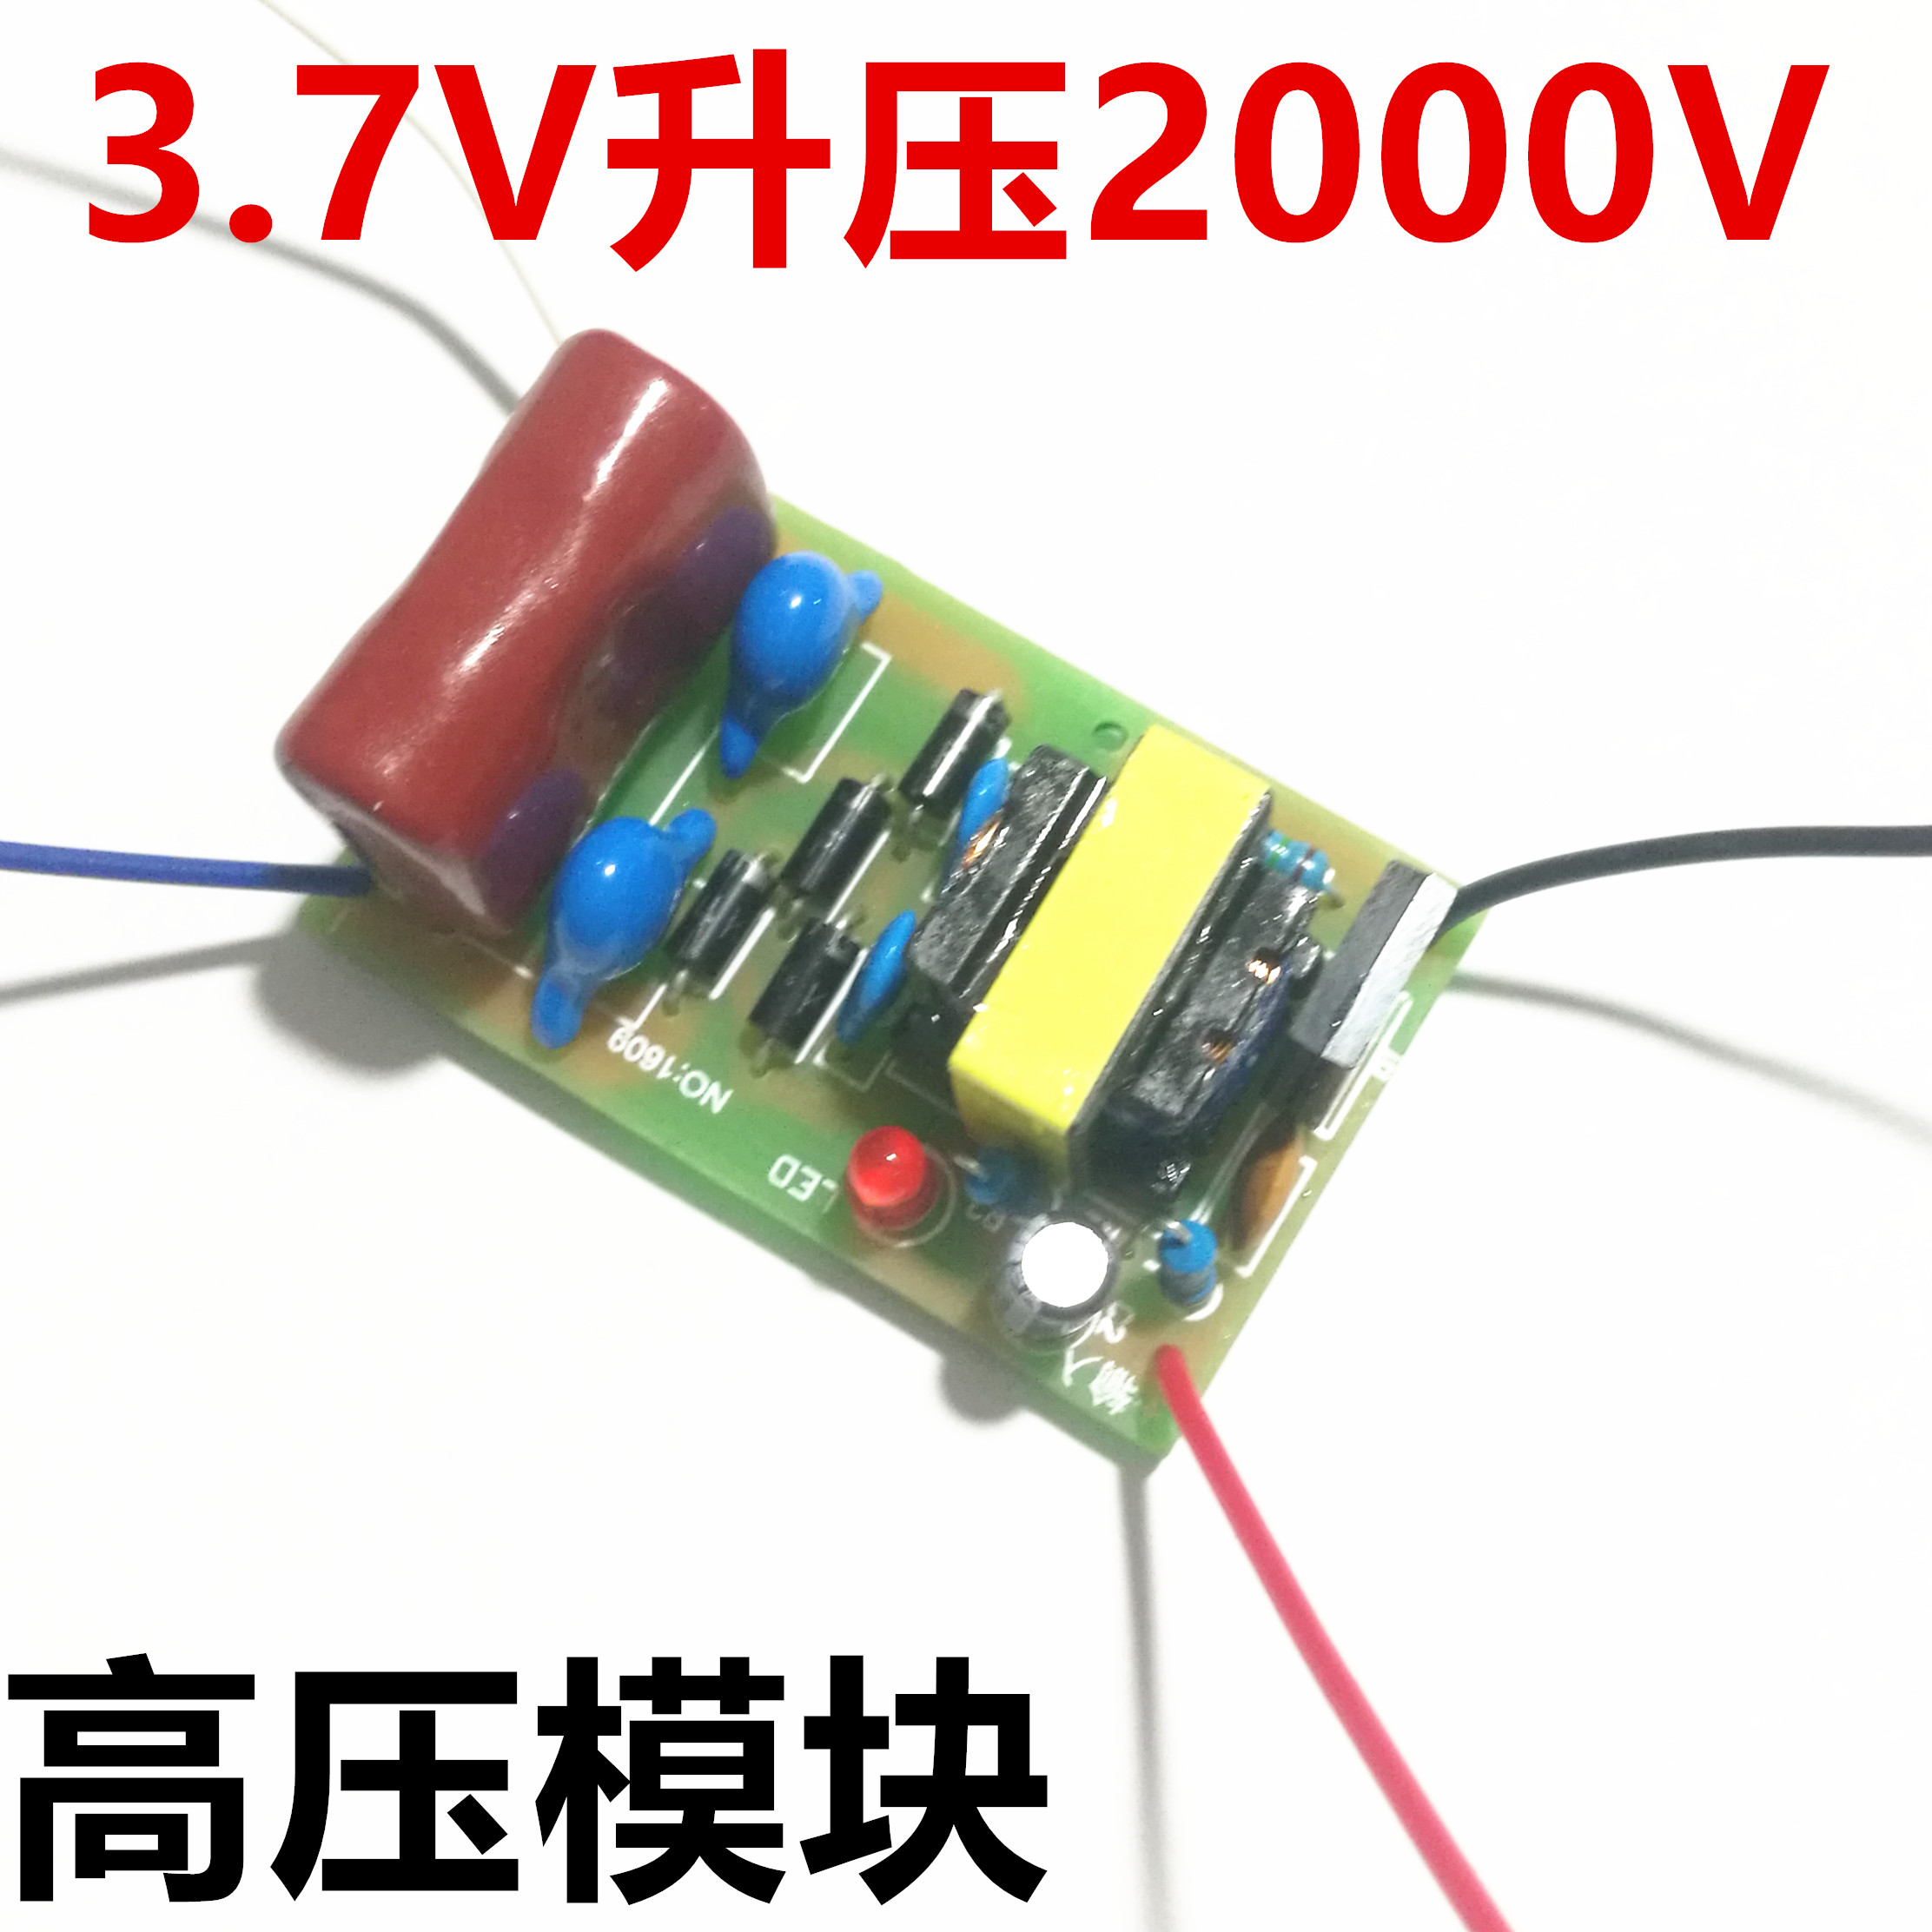 3.7V升2000V模块 升压器 模块超强电弧脉冲直流 电击高压包2000V